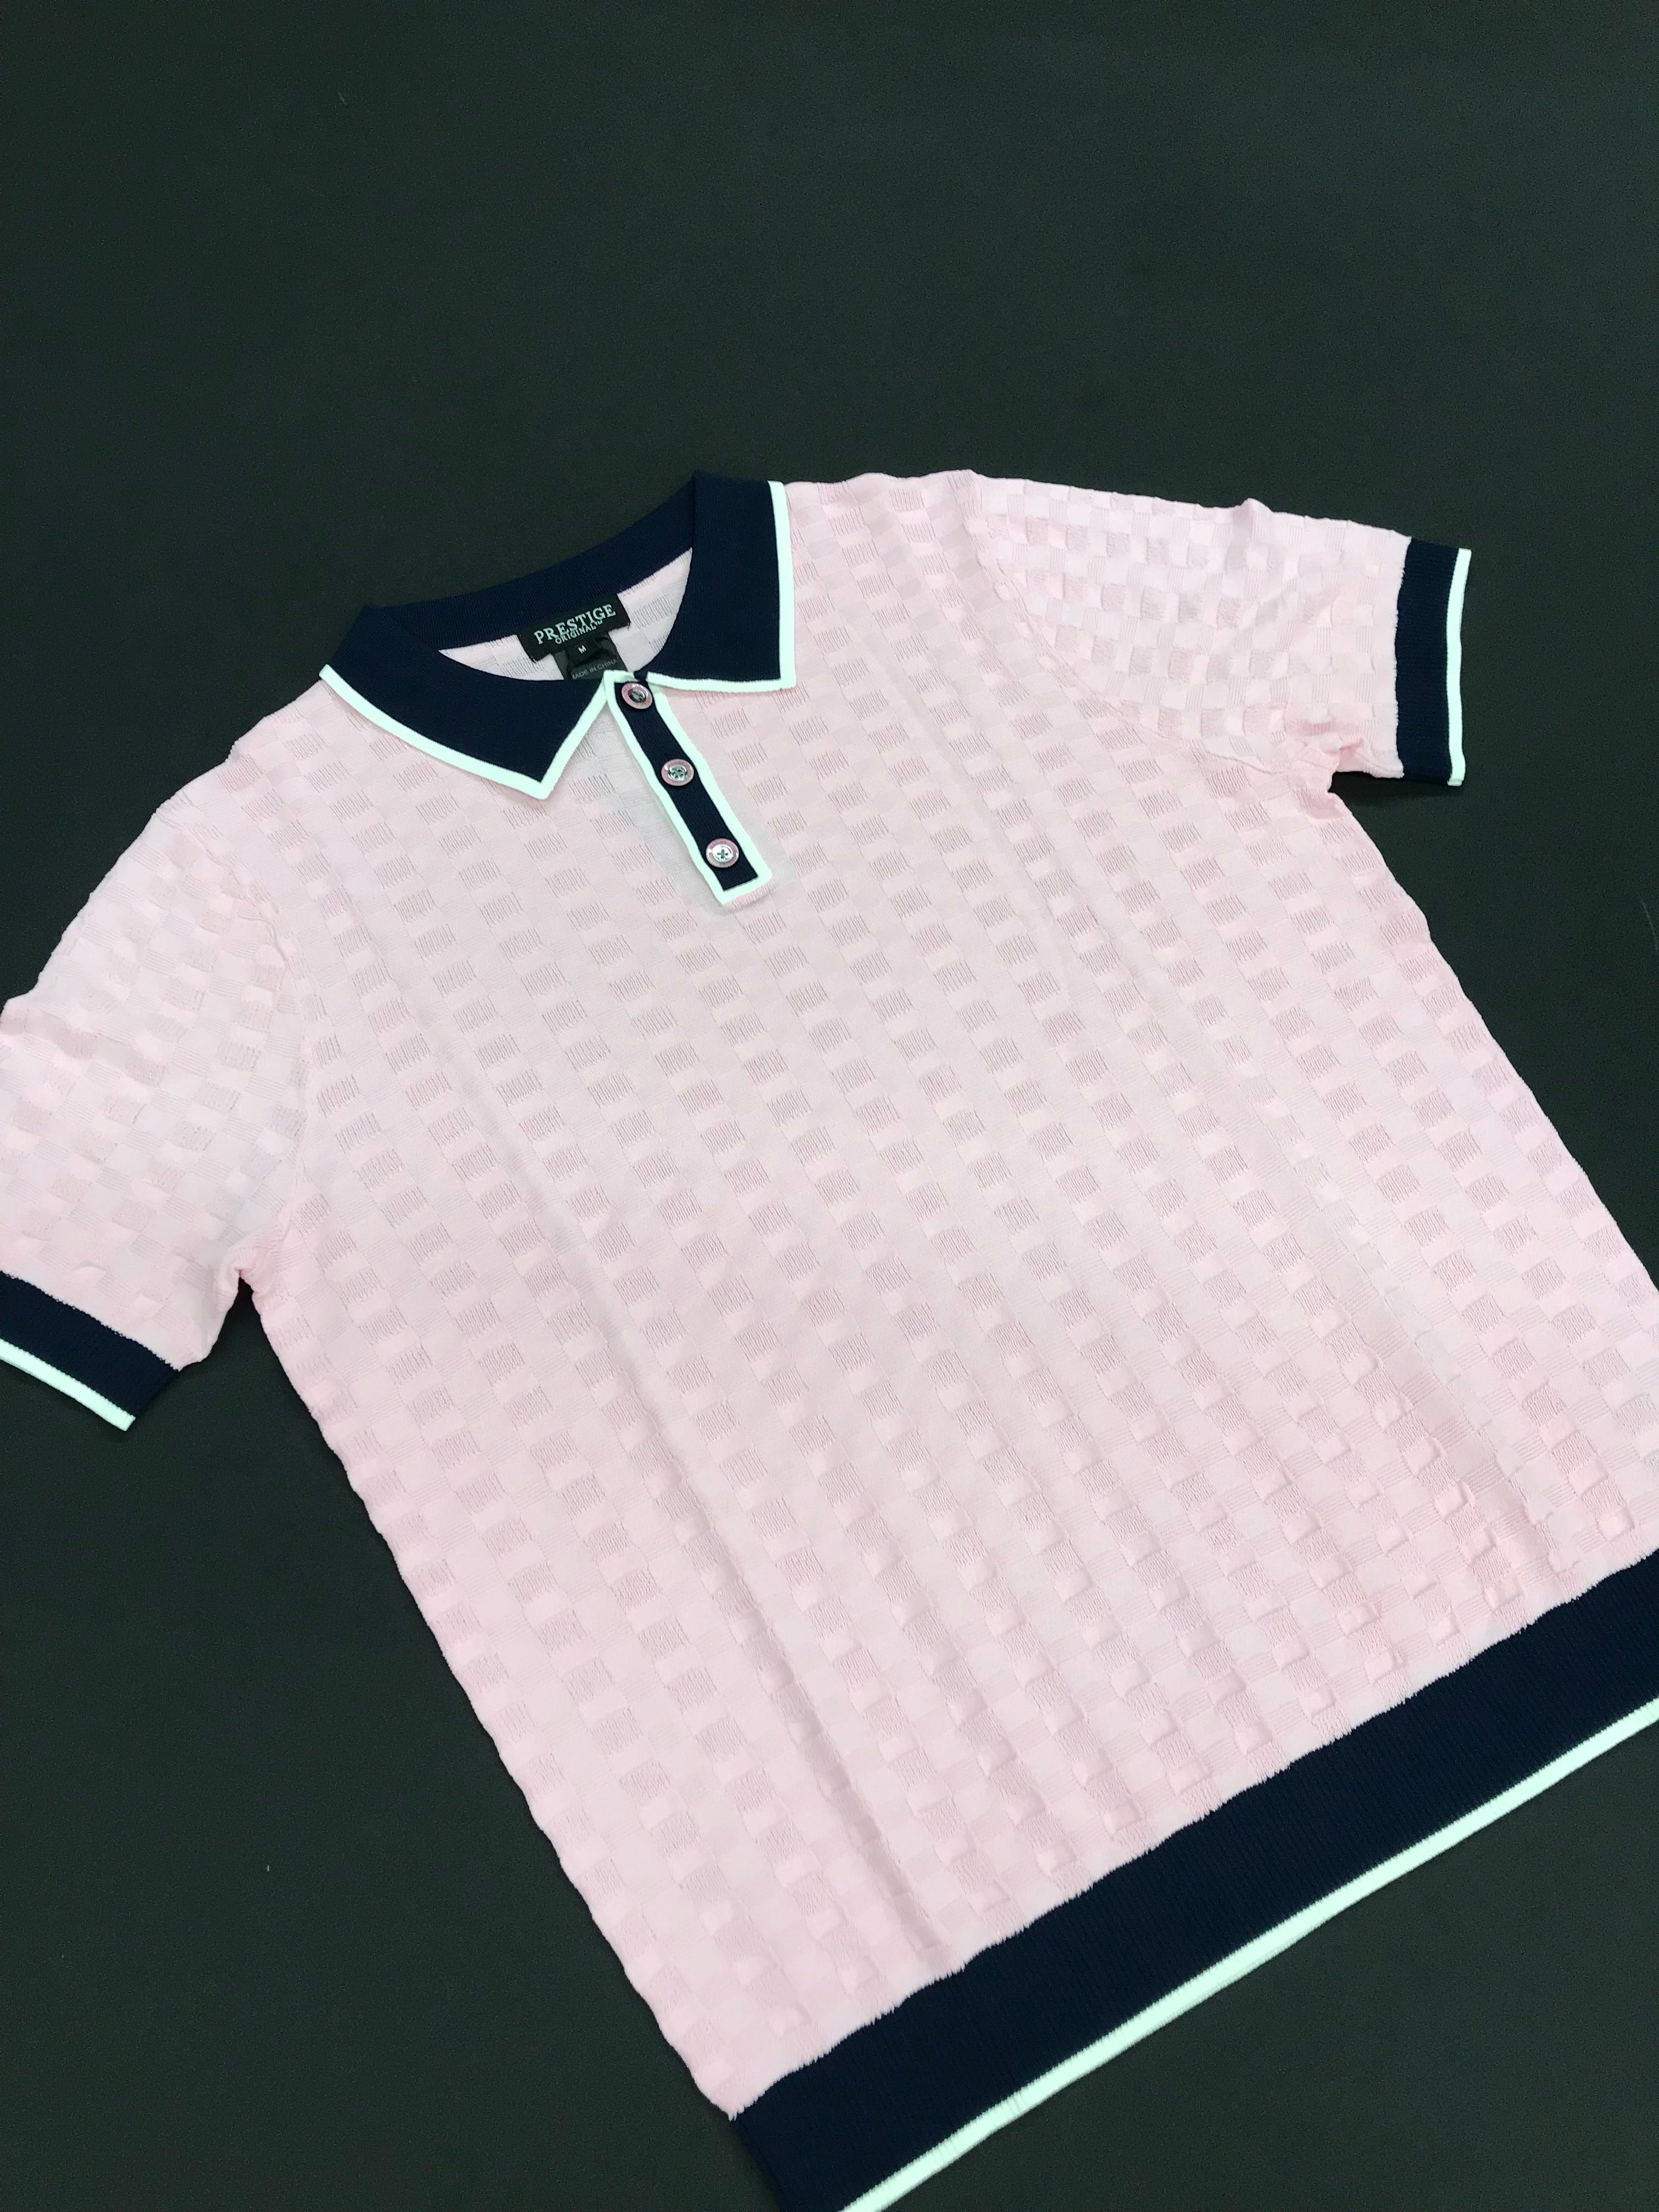 Prestige Pink/Navy/White Short Sleeve Shirt